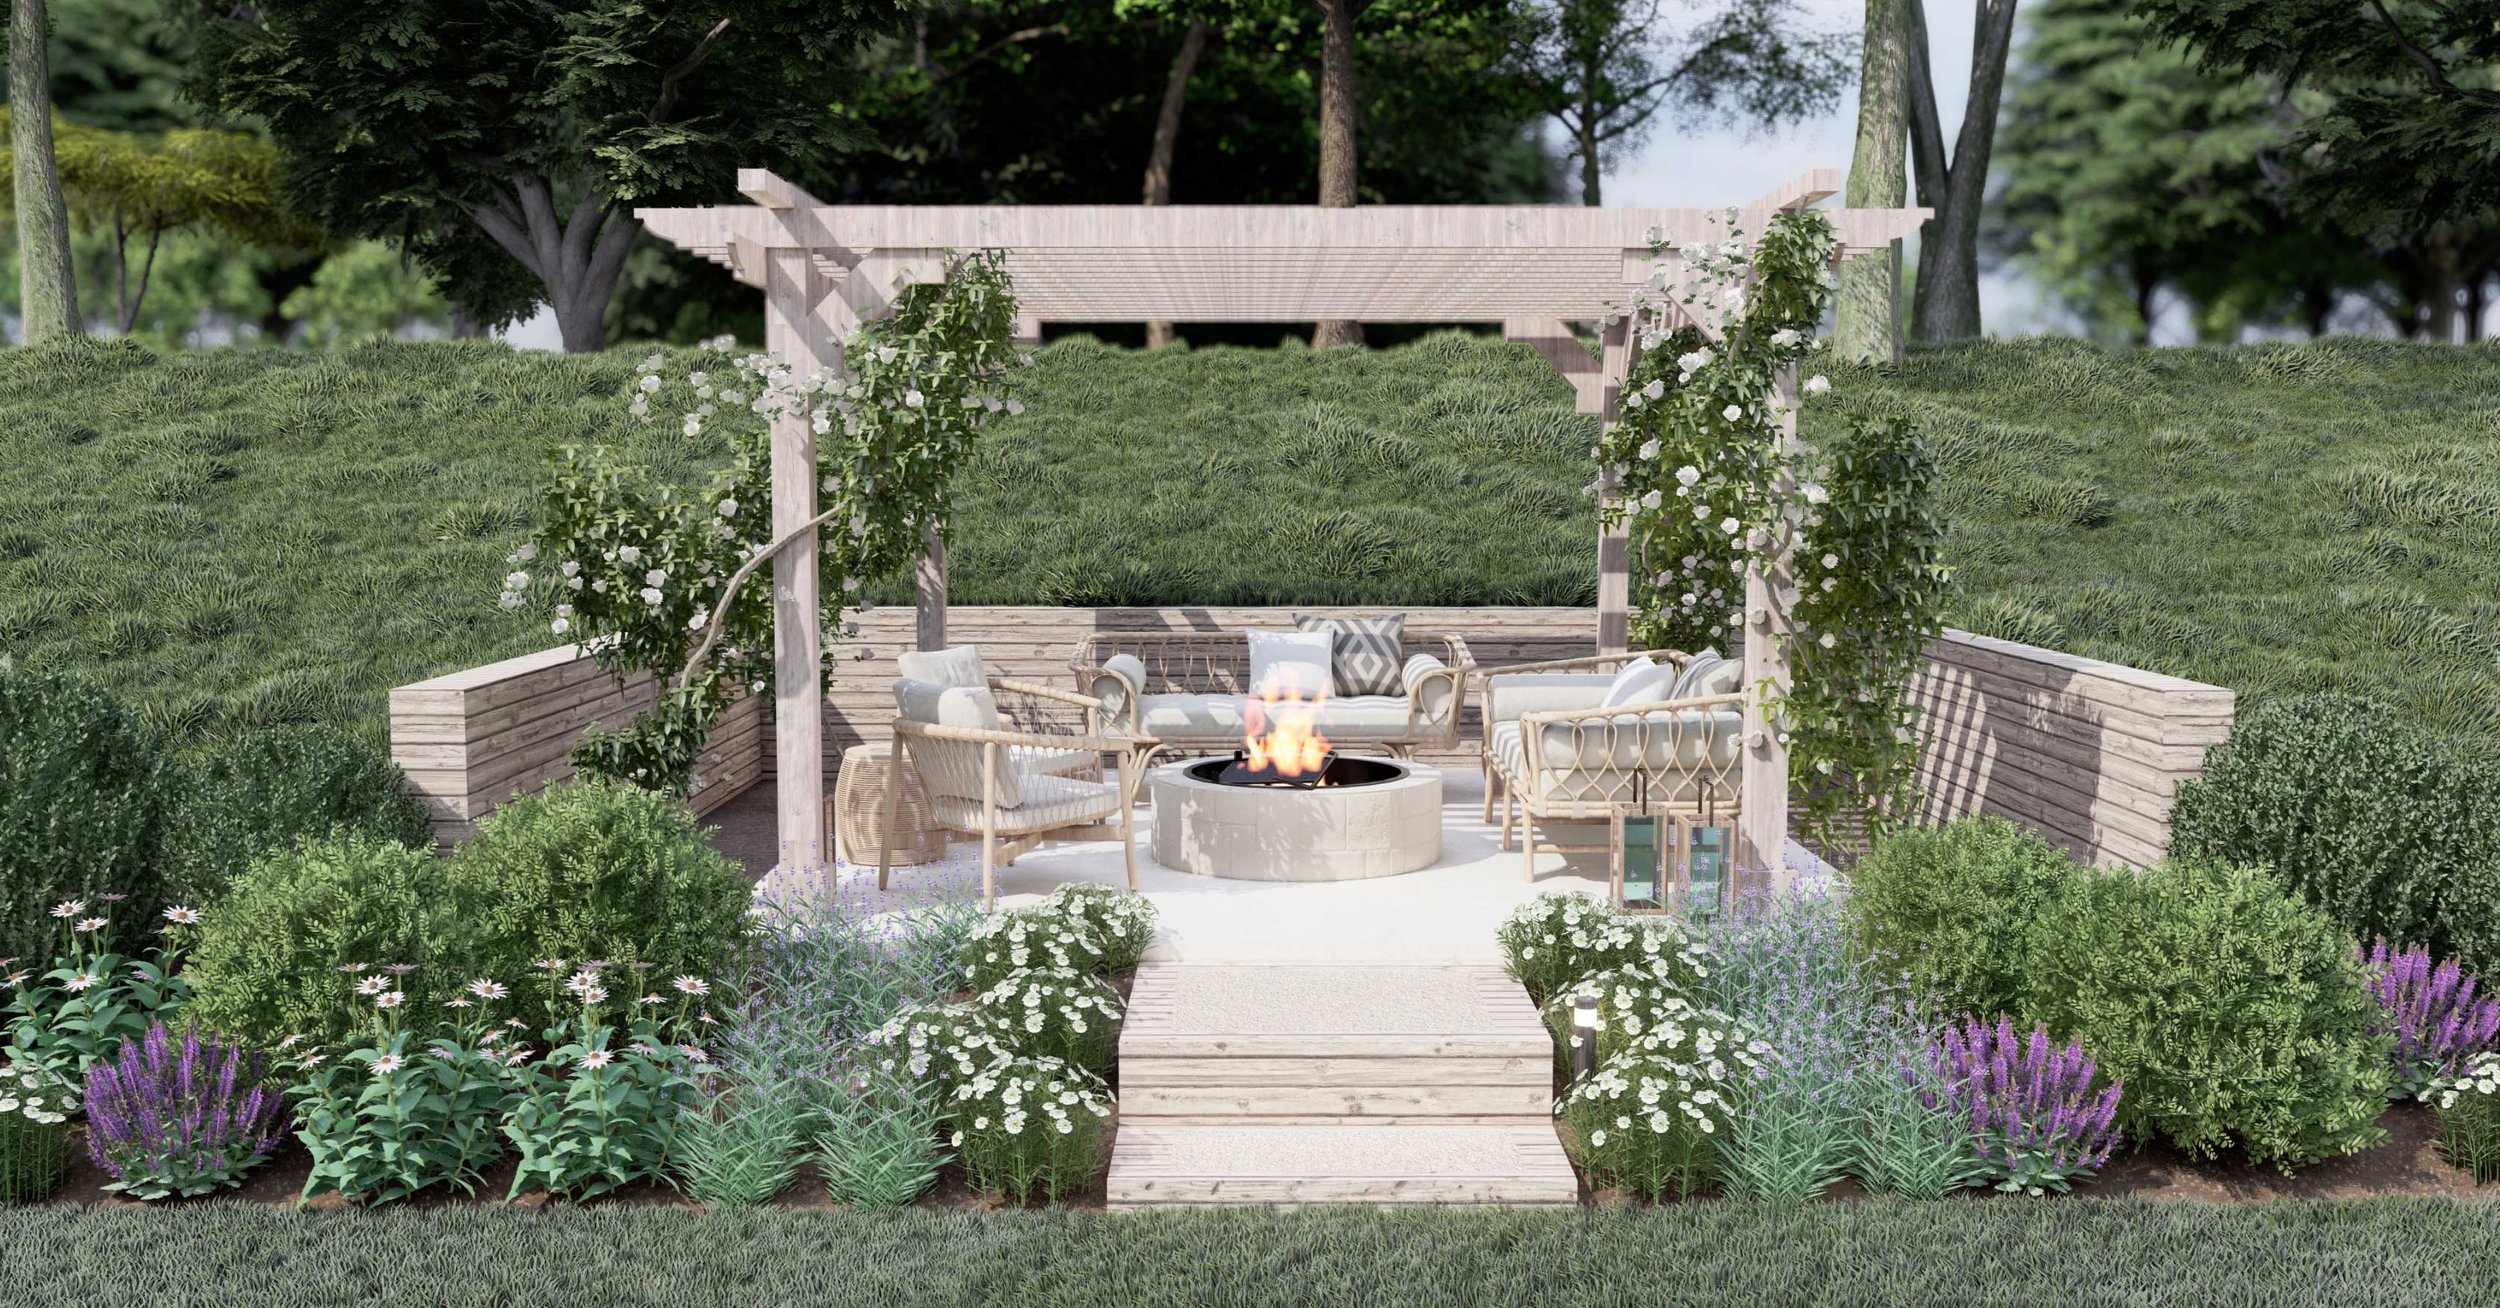 在俄克拉荷马州的后院设计中，藤架覆盖着白色的匍匐玫瑰，创造了一个舒适而美丽的室外火坑区